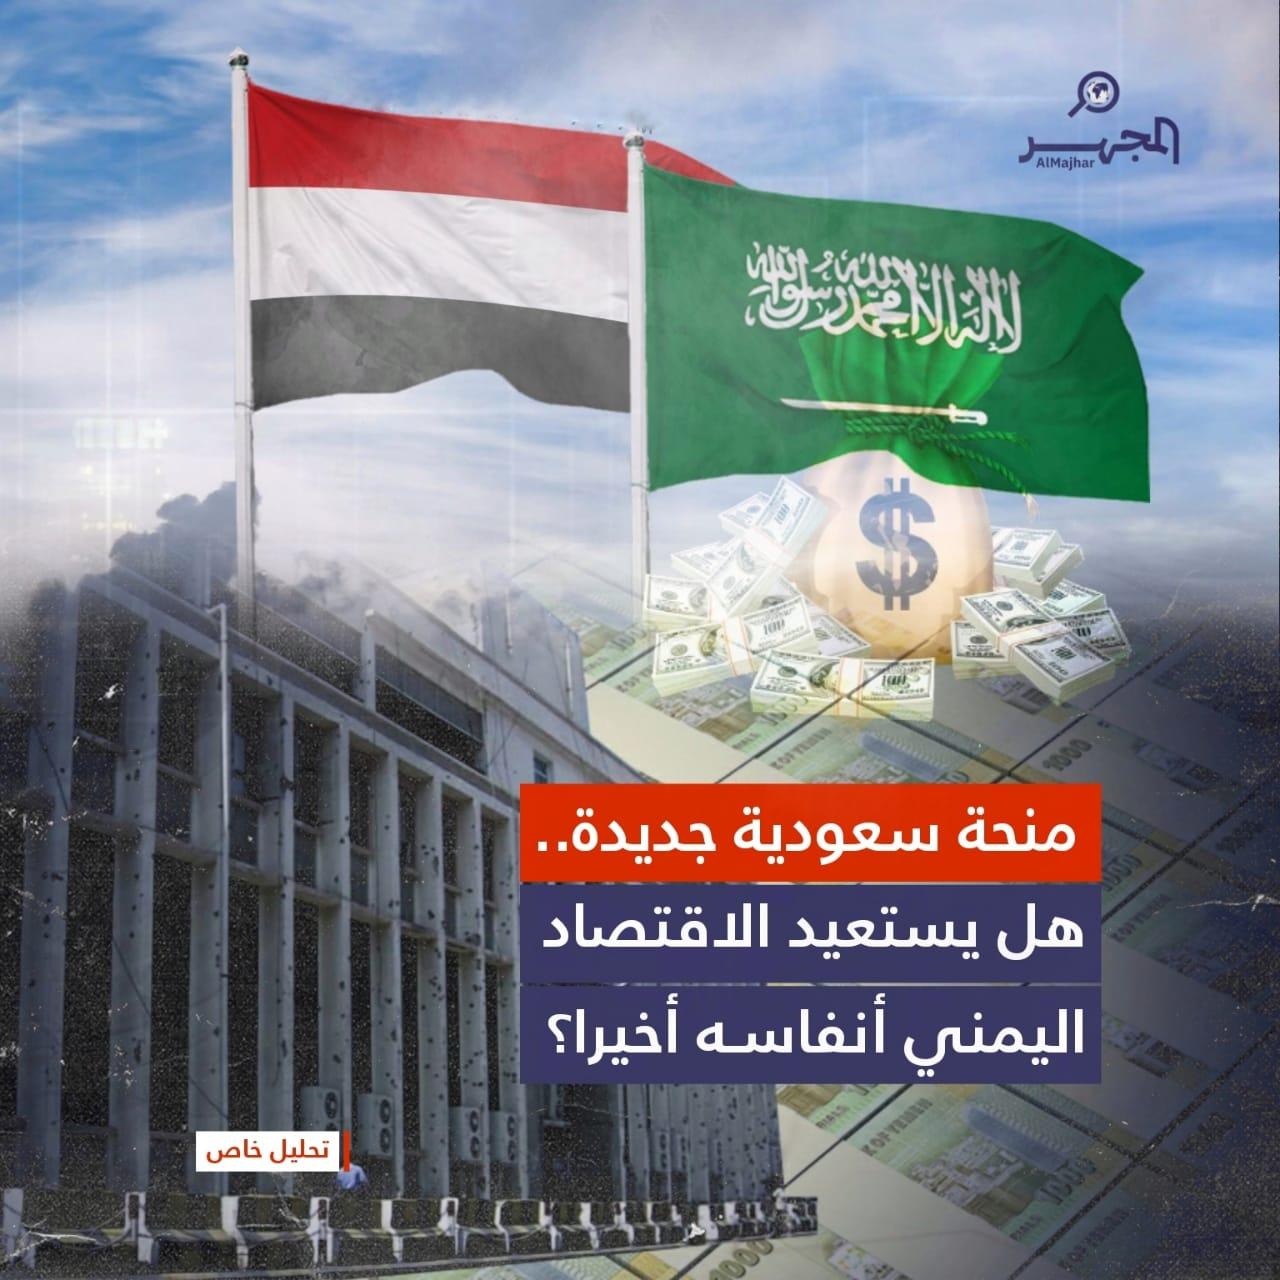 منحة سعودية جديدة.. هل يستعيد الاقتصاد اليمني أنفاسه أخيرا؟ (تحليل)